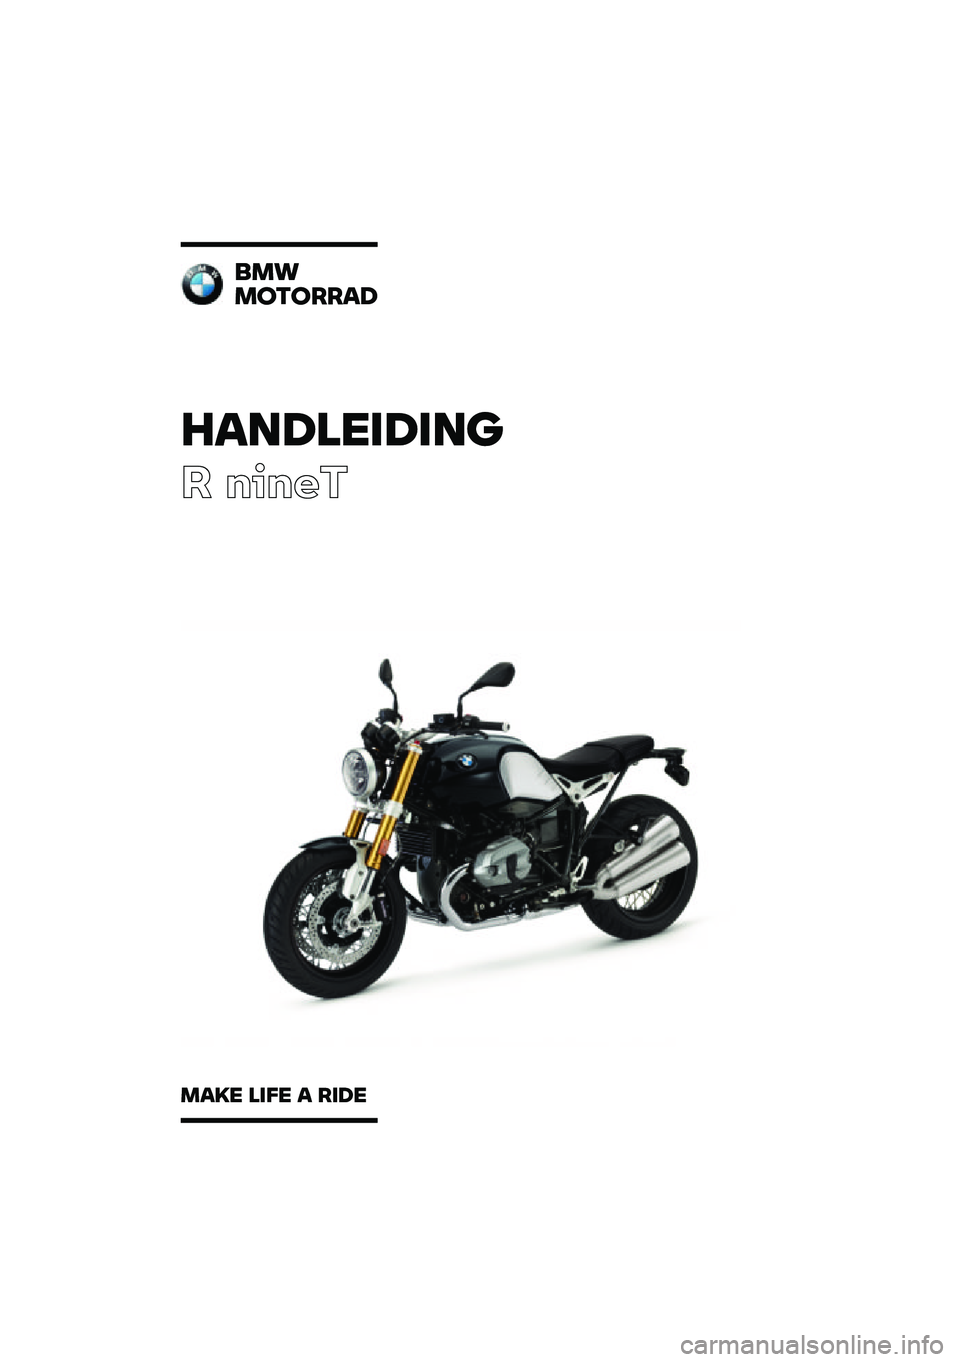 BMW MOTORRAD R NINE T 2020  Handleiding (in Dutch) �������\b��\b��	
� �����
�
��\f
��
��
����
���� ��\b�� � ��\b�� 